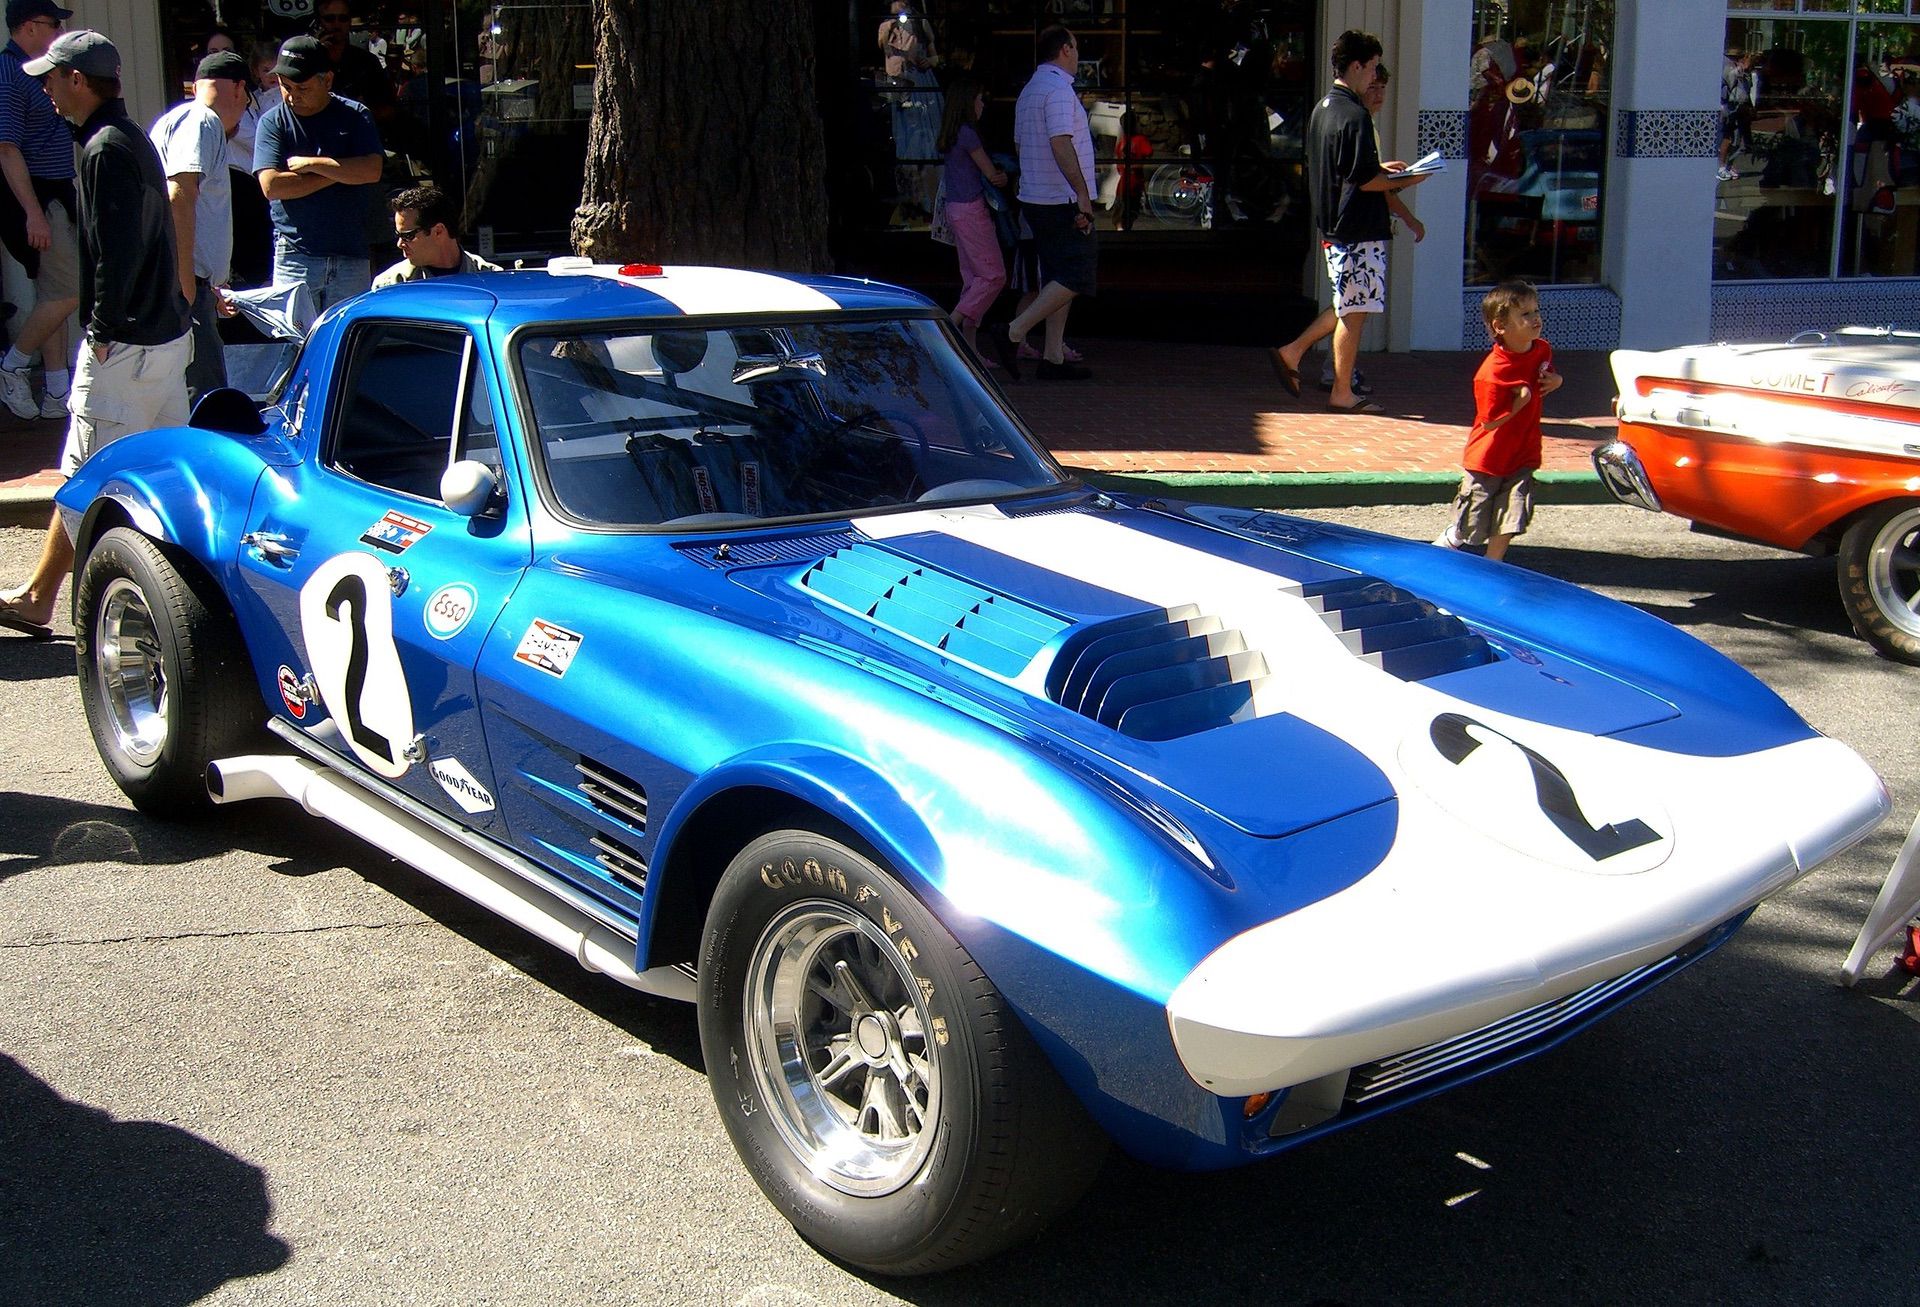 1963 Corvette C2 Grand Sport, one of five